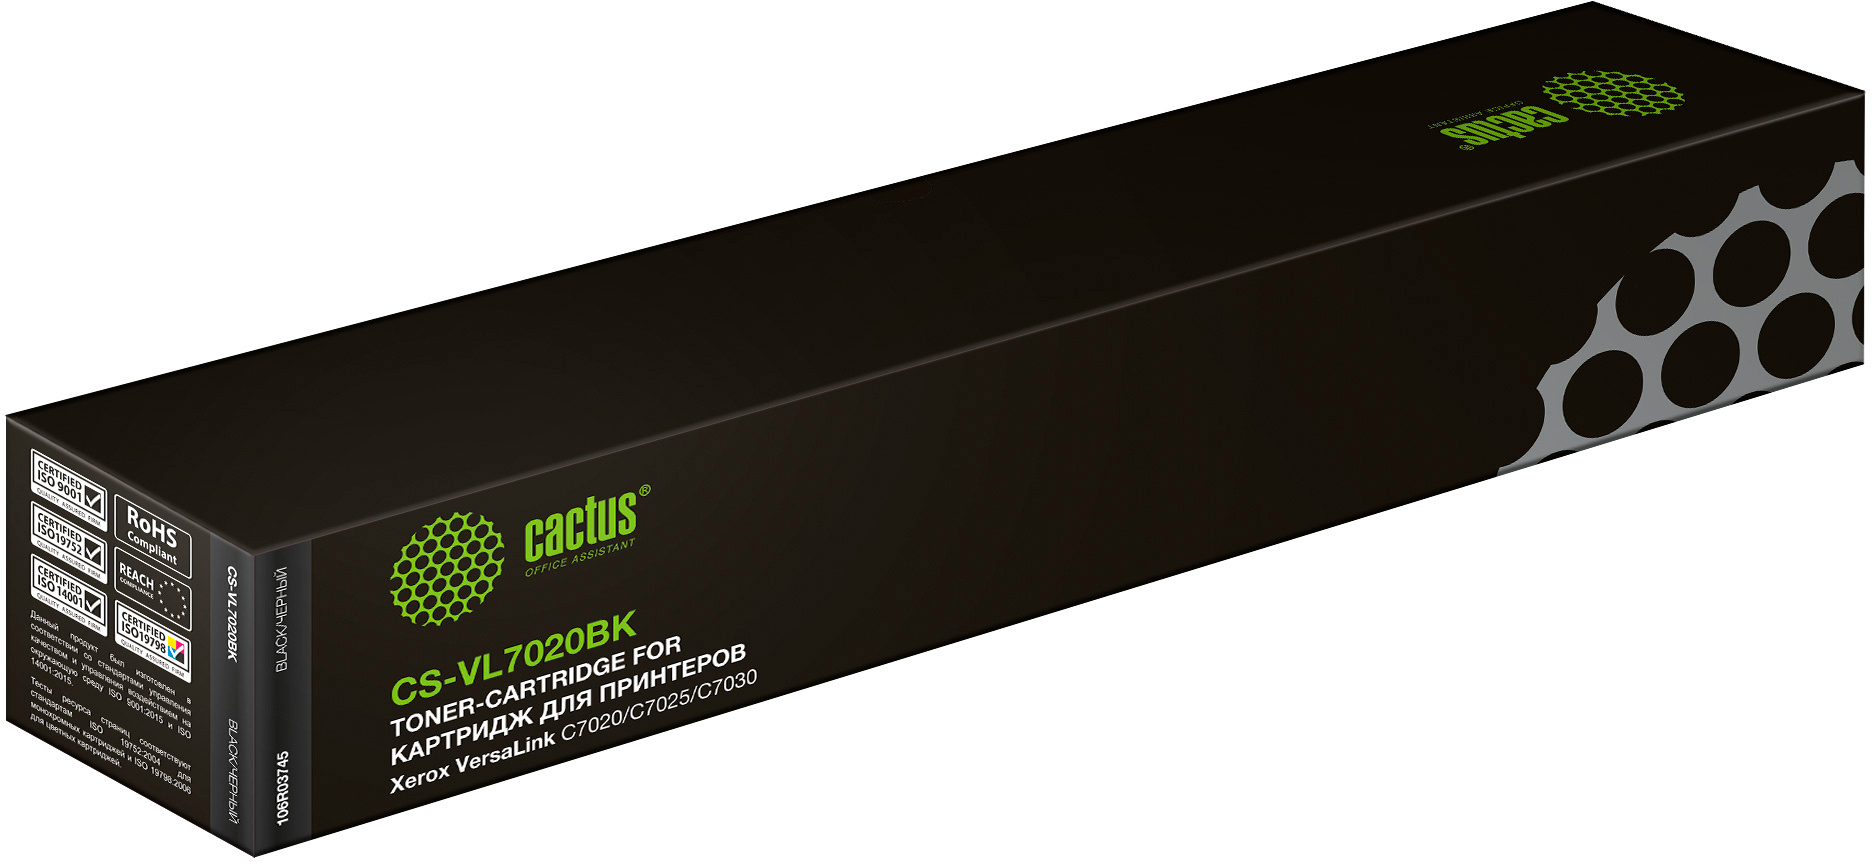 Картридж лазерный Cactus CS-VL7020BK 106R03745 черный (23600стр.) для Xerox VersaLink C7020/C7025/C7030